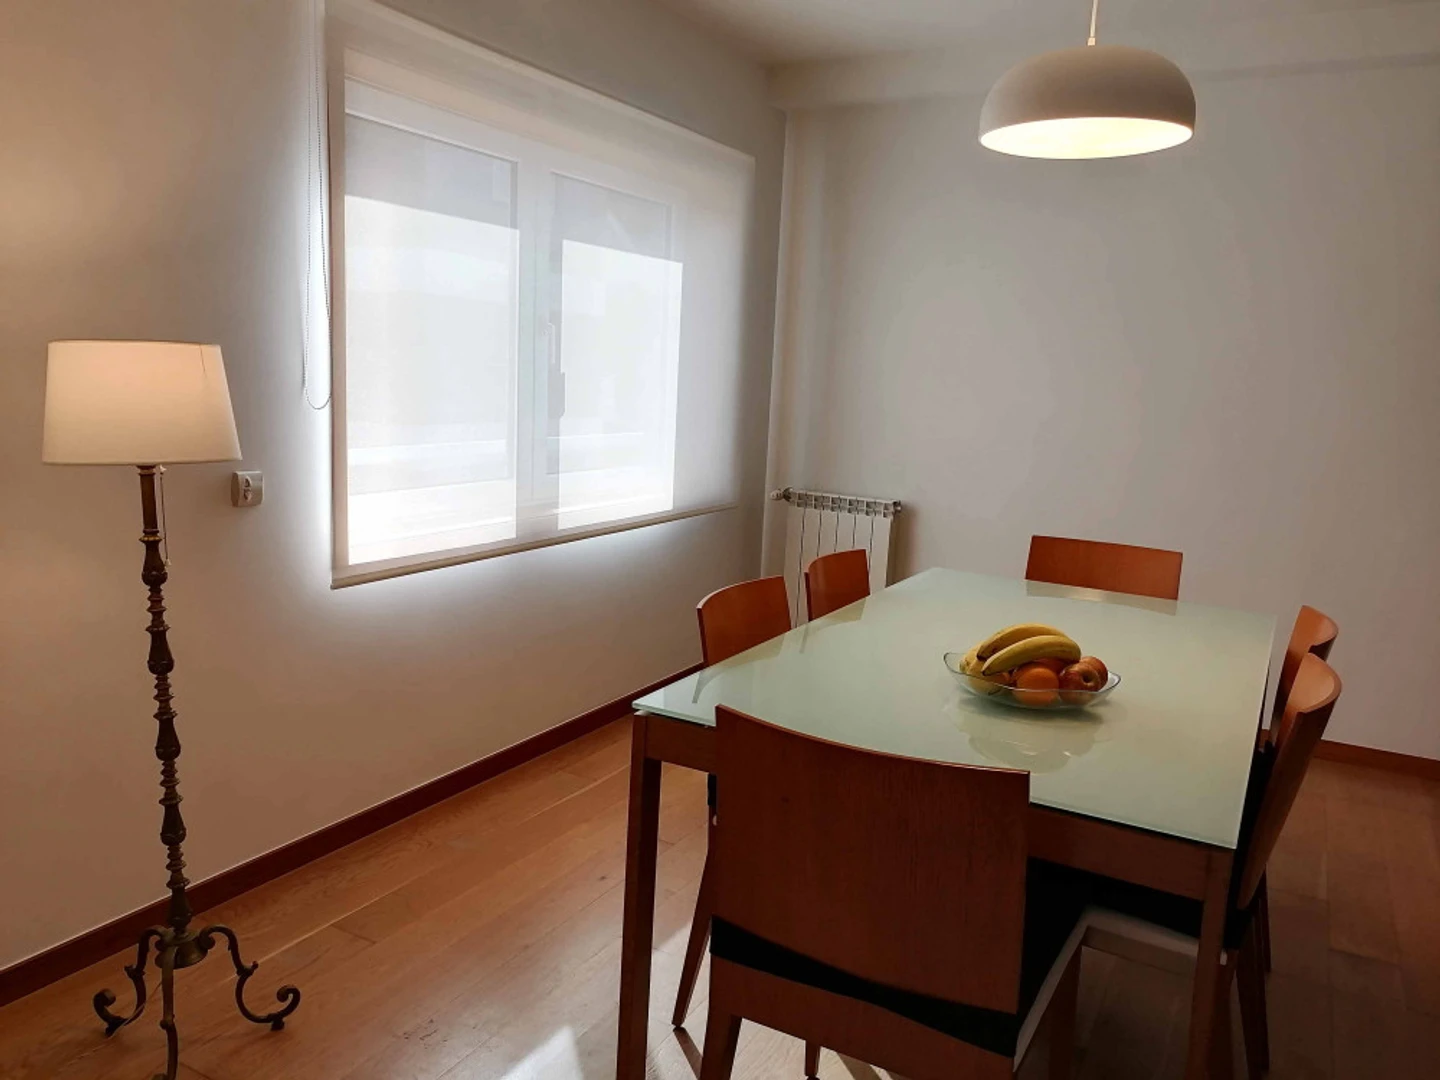 Appartement moderne et lumineux à Aveiro